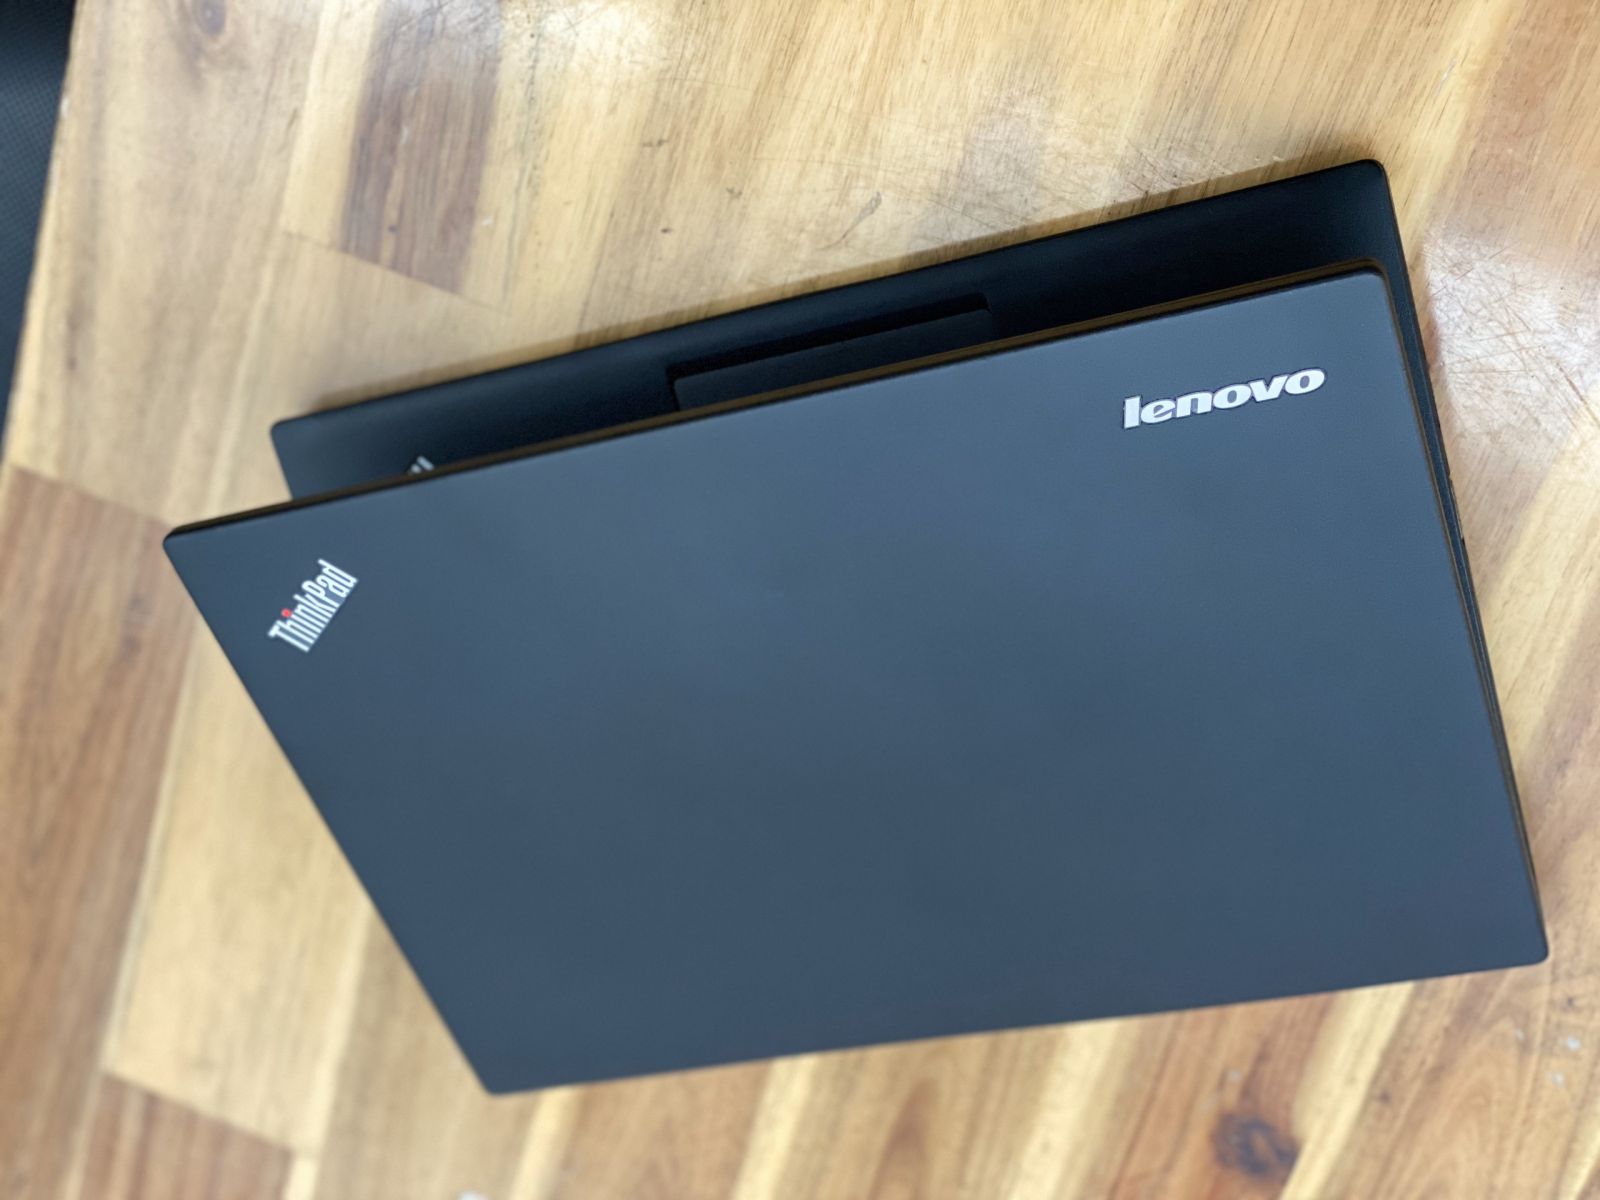 Laptop Lenovo Thinkpad X250, I5 5200U 8G SSD128G 12in siêu mỏng Đẹp Keng Giá rẻ1